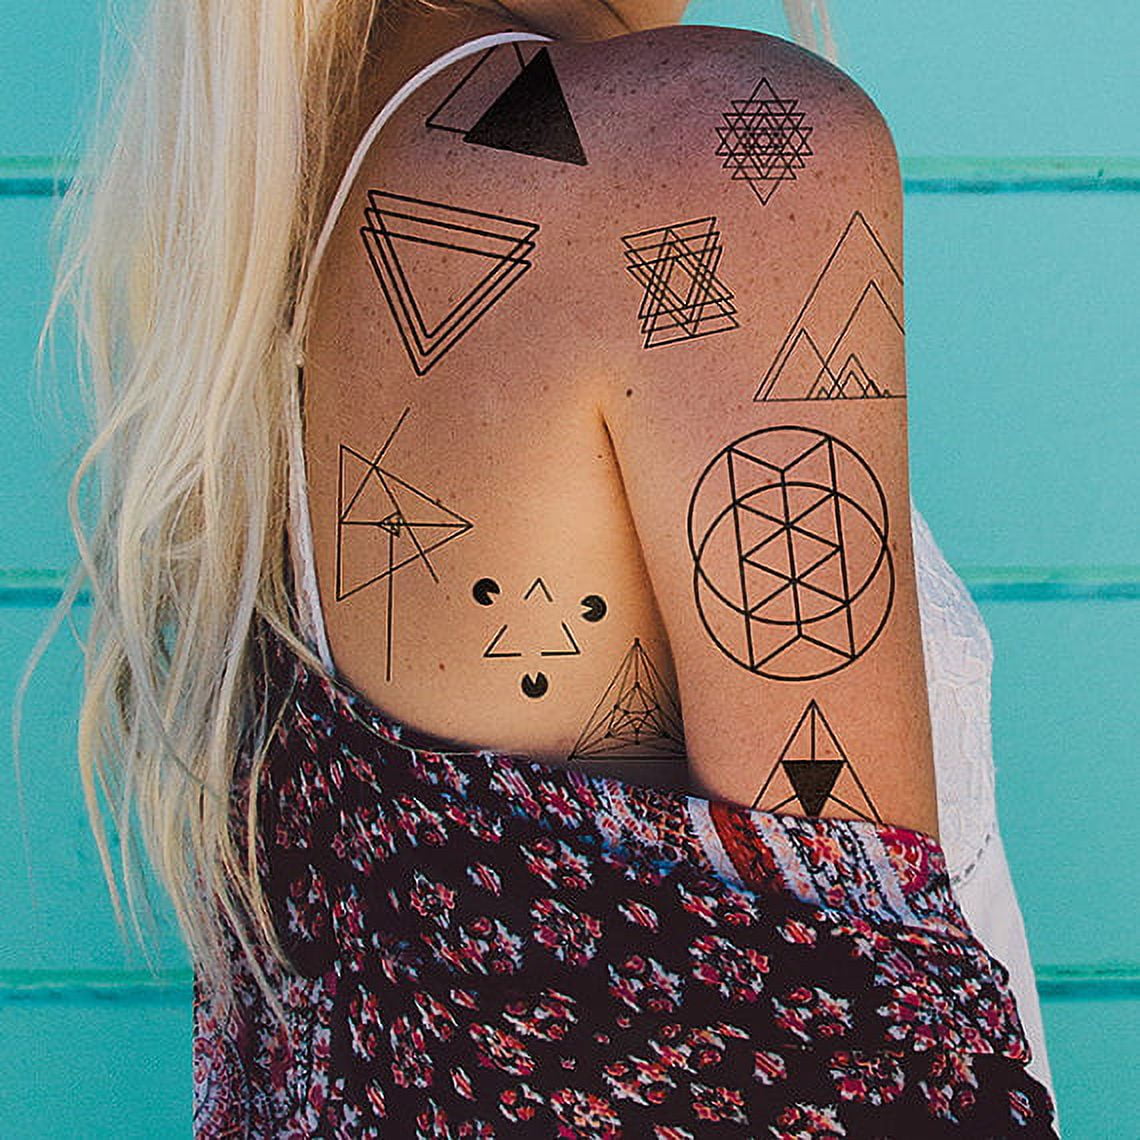 8 Small Tattoos That Mean Big Things • Tattoodo